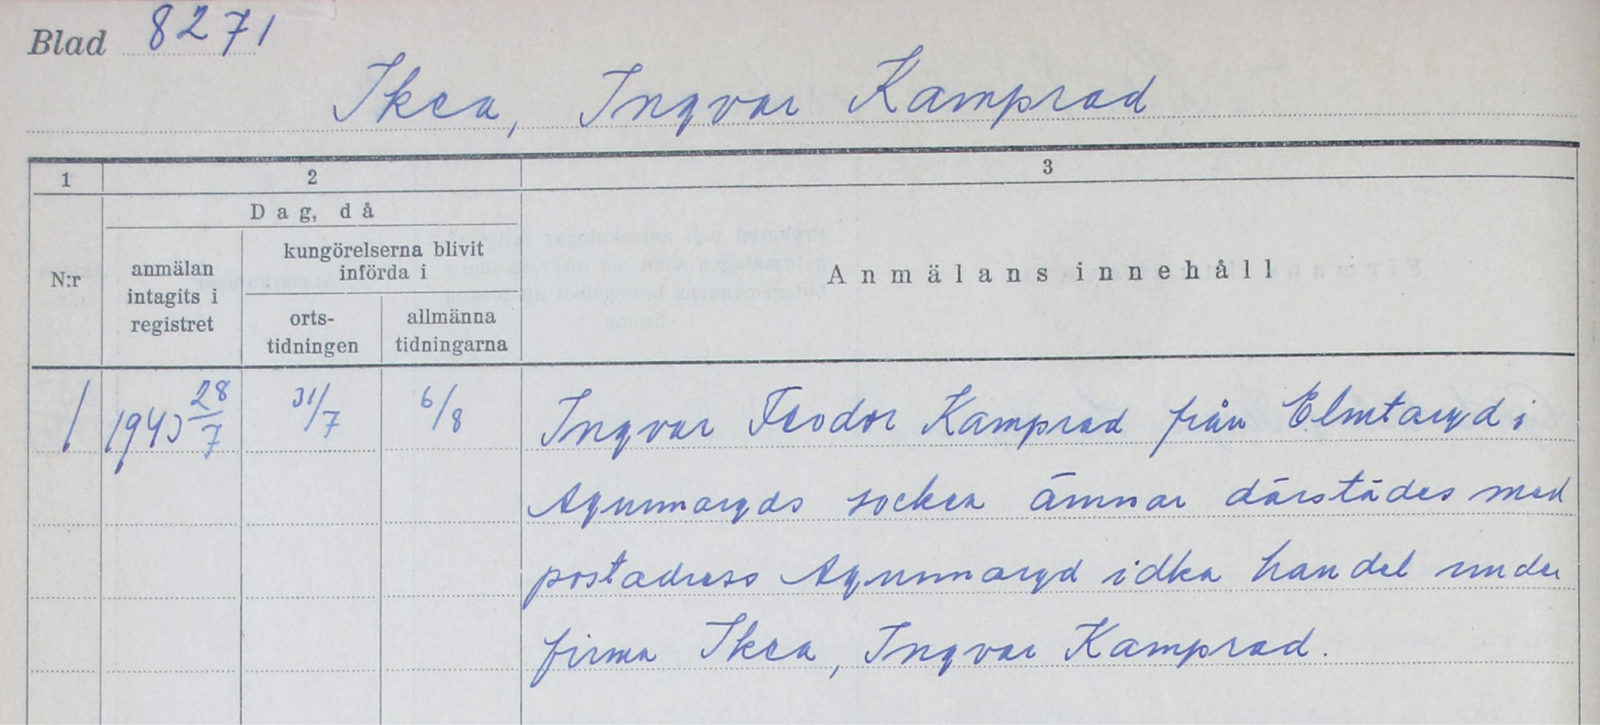 Impreso escrito con bolígrafo azul; Ingvar Kamprad pide el alta de Ikéa en Elmtaryd (Agunnaryd) en 1940.